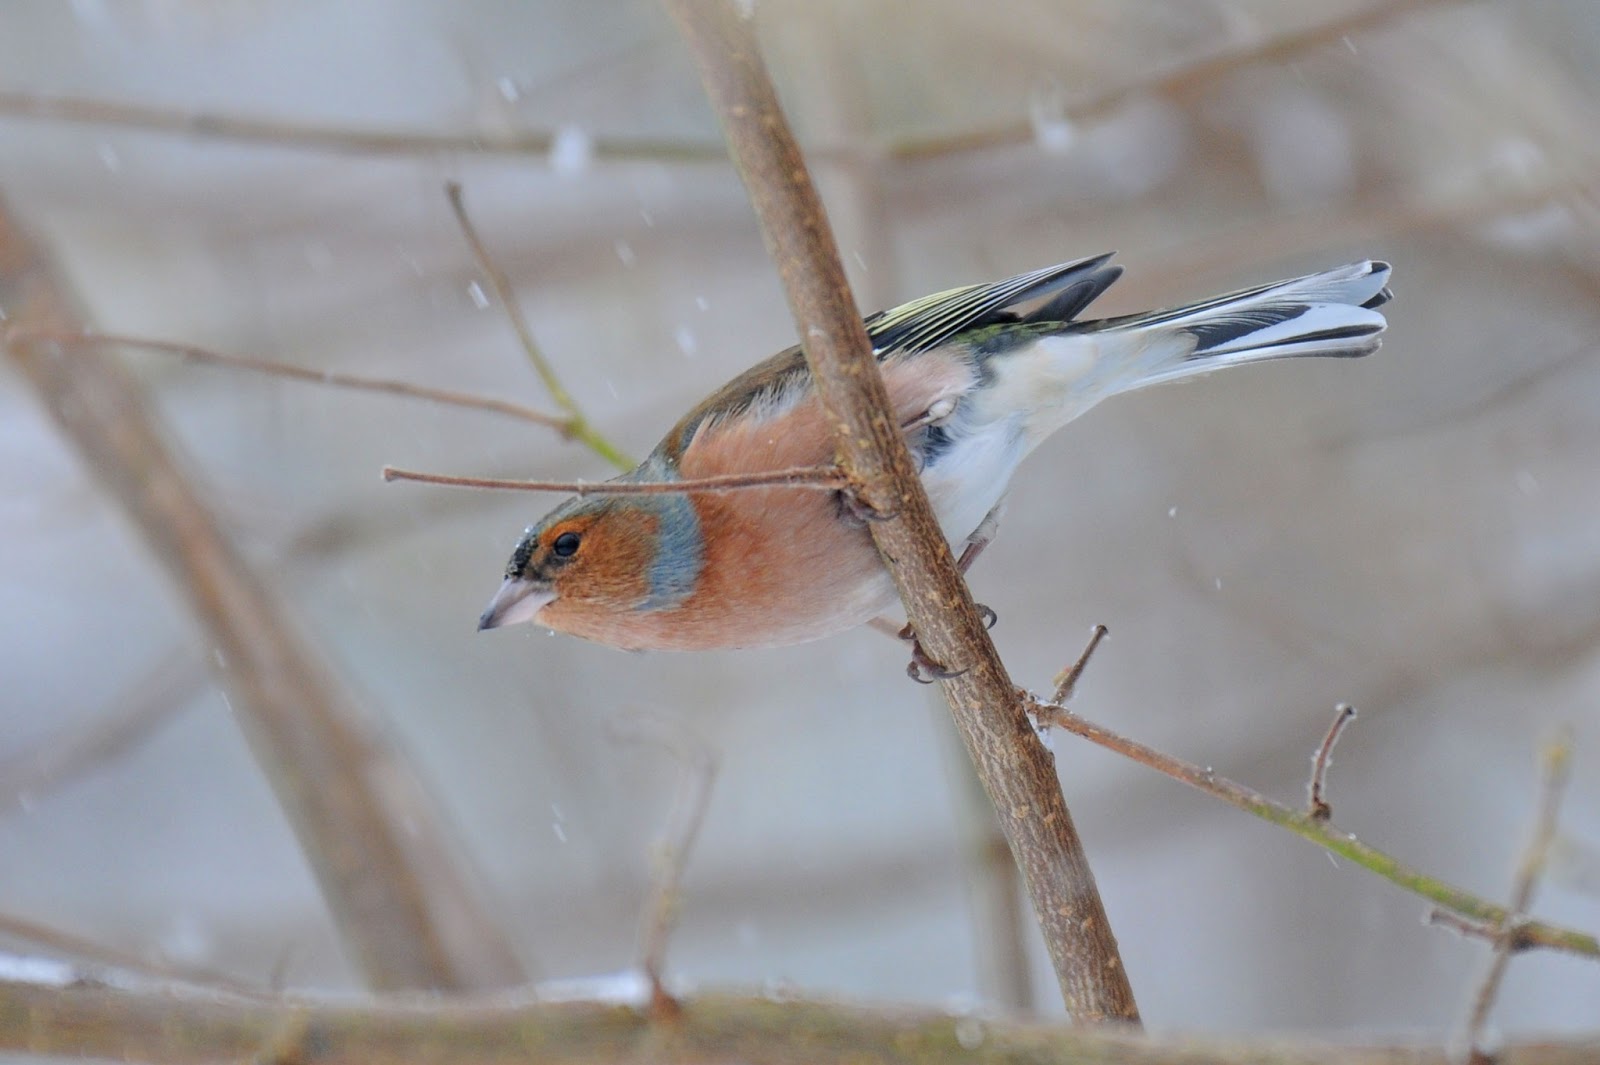 Bill's Birding: Snow Birds